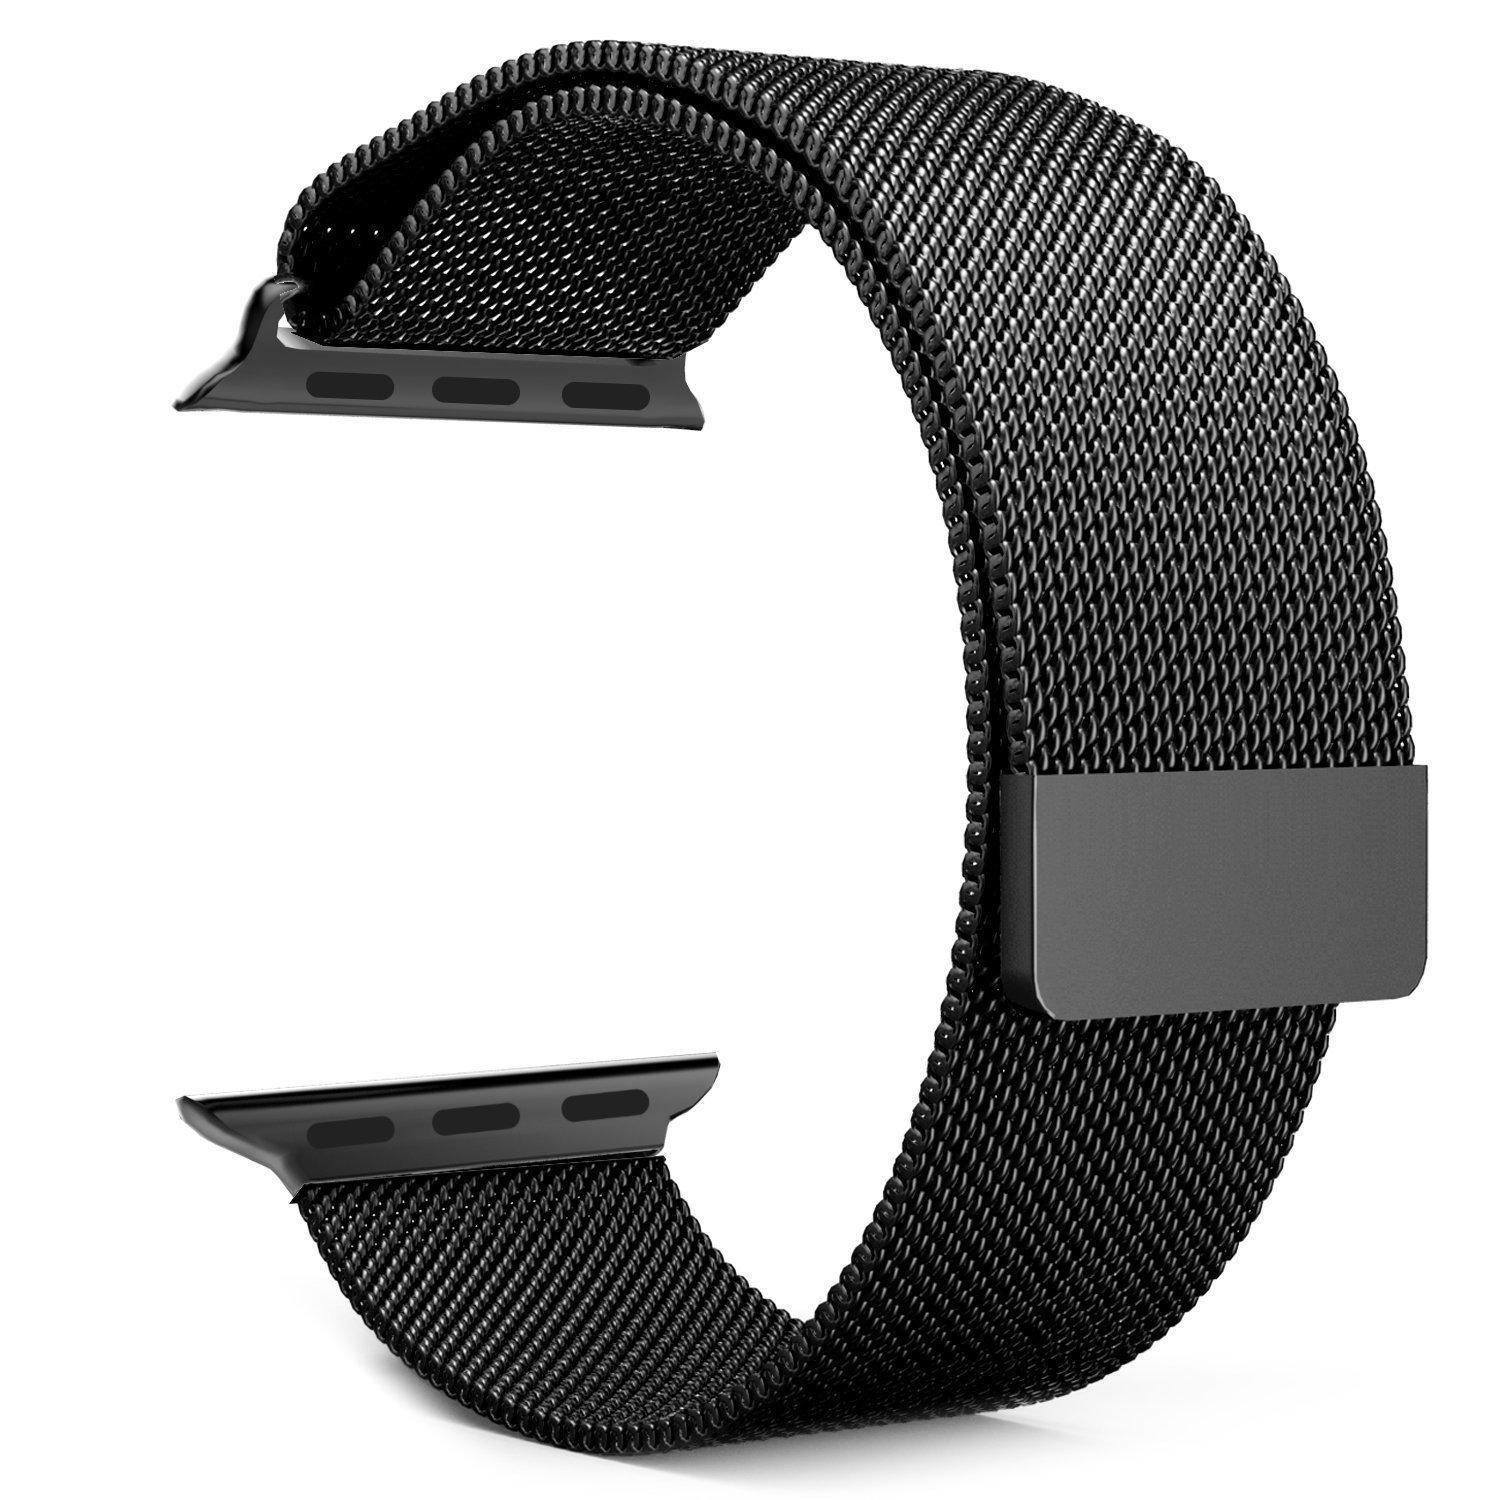 NoXx Geschikt Voor Apple Watch 7 Bandje Magneetsluiting - Horloge Band Voor Apple Watch 7 45 mm Milanees - Zwart & Rose Goud